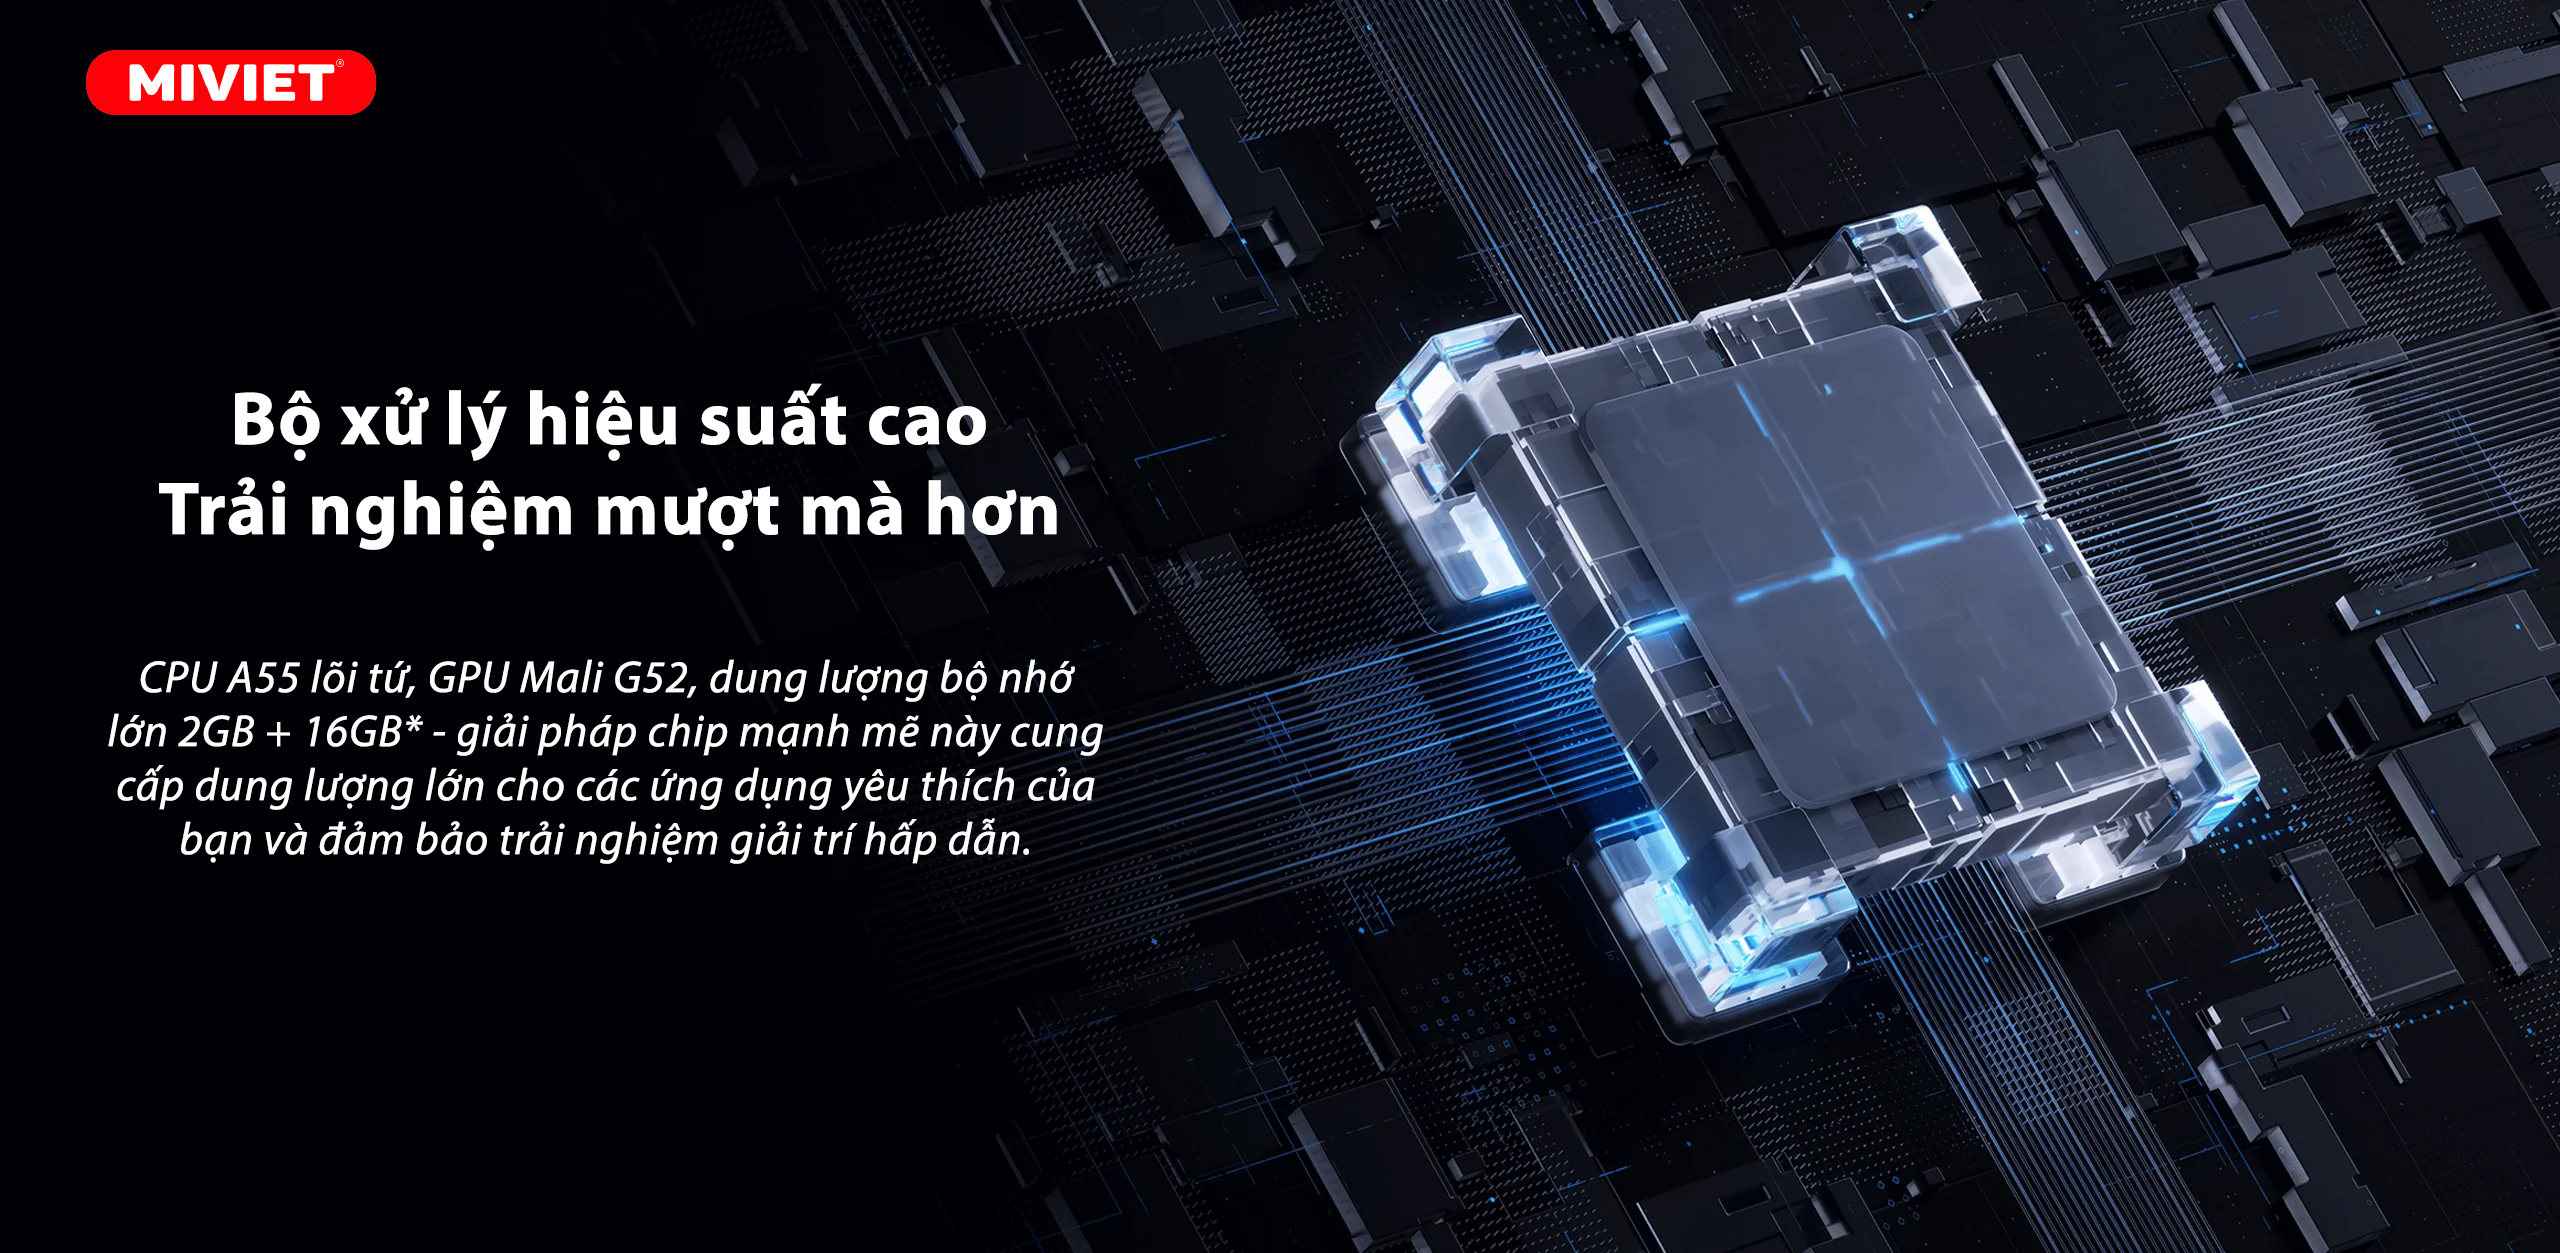 Smart Xiaomi TV A Pro 43 inch 4K - Quốc Tế - BH 24 tháng - Chính hãng Xiaomi Việt Nam - Full VAT